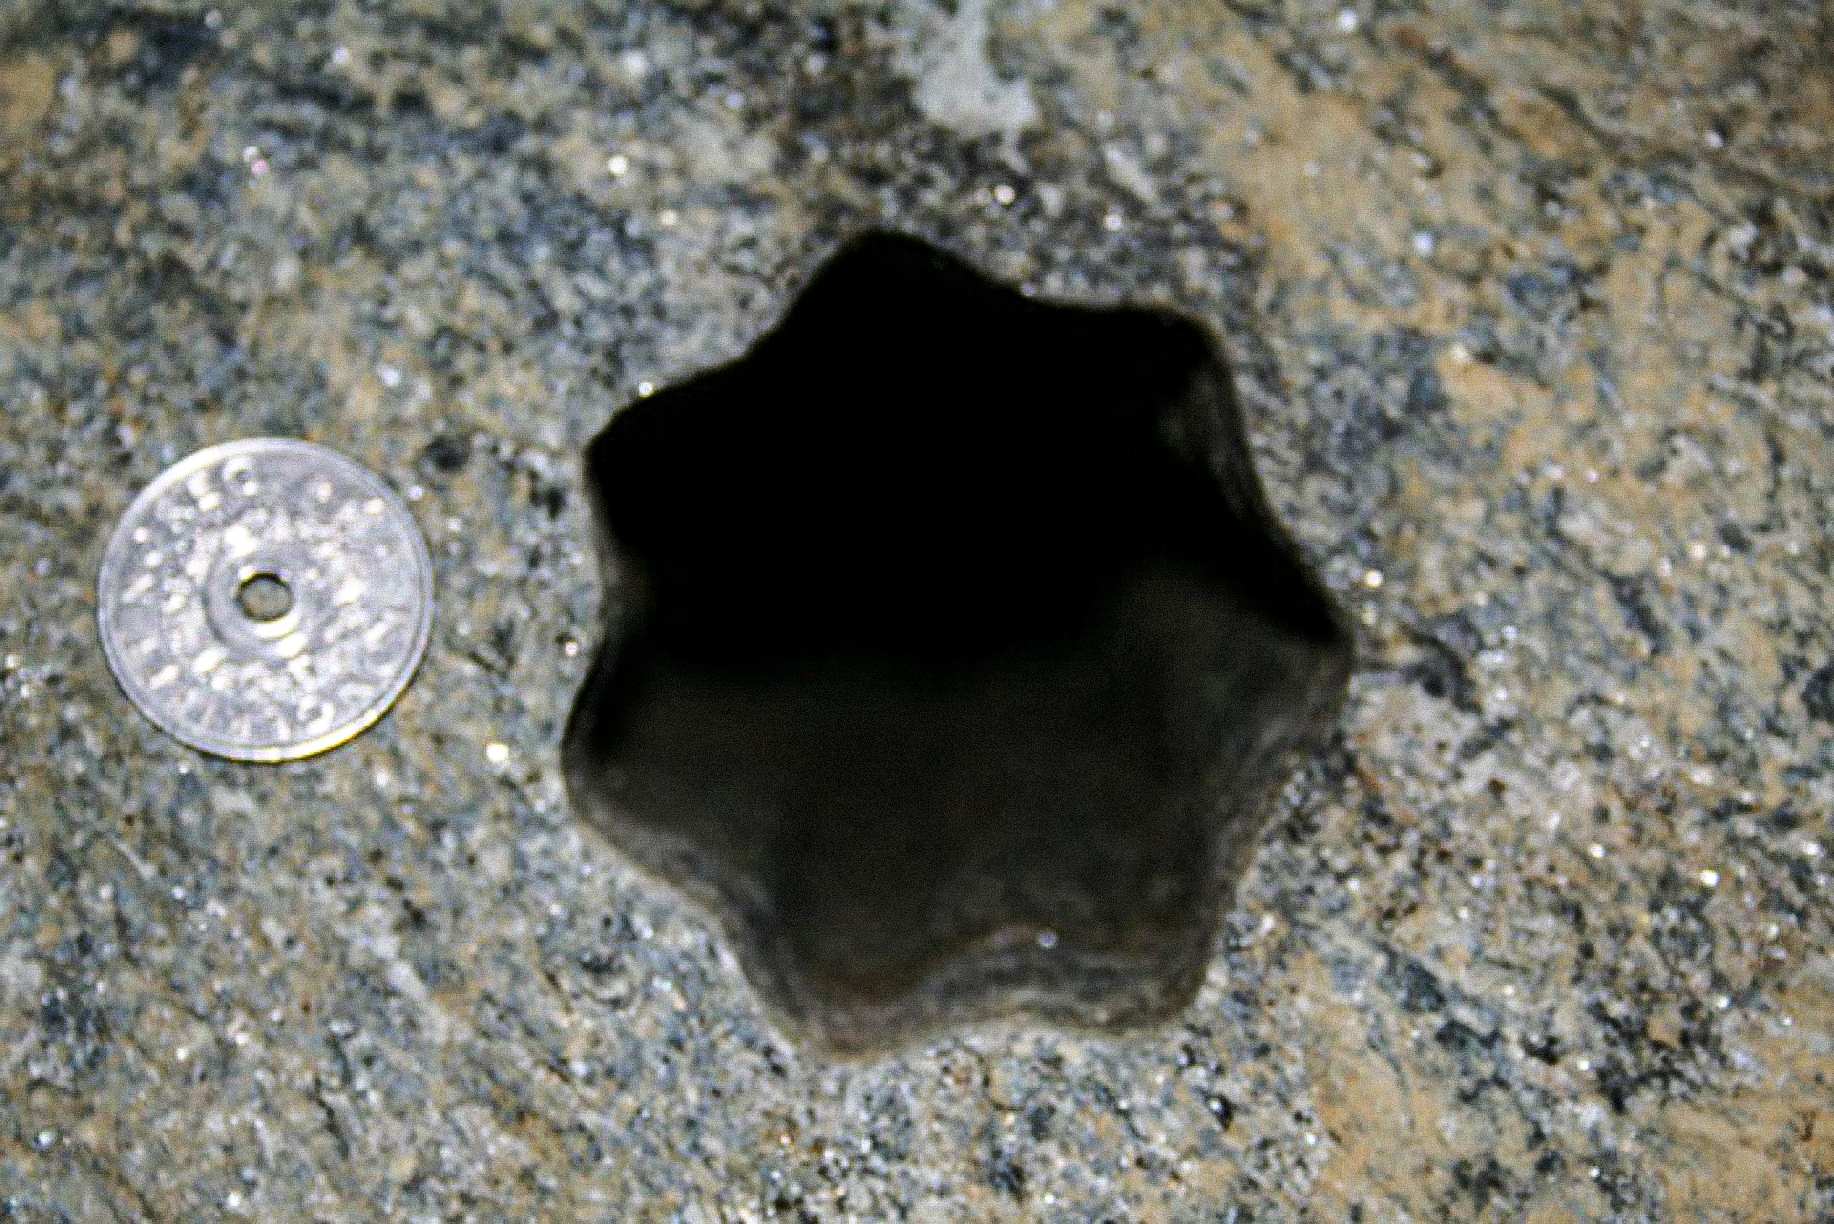 ستارے کی شکل کا یہ سوراخ (سات اطراف والا) ٹھیکیداروں نے جمعہ 30 نومبر 2007 کو وولڈا، ناروے میں پایا۔ ناروے کے 5 - کرونر سکے کا قطر 25 ملی میٹر ہے۔ اس سوراخ کا قطر تقریباً 65 - 70 ملی میٹر ہے۔